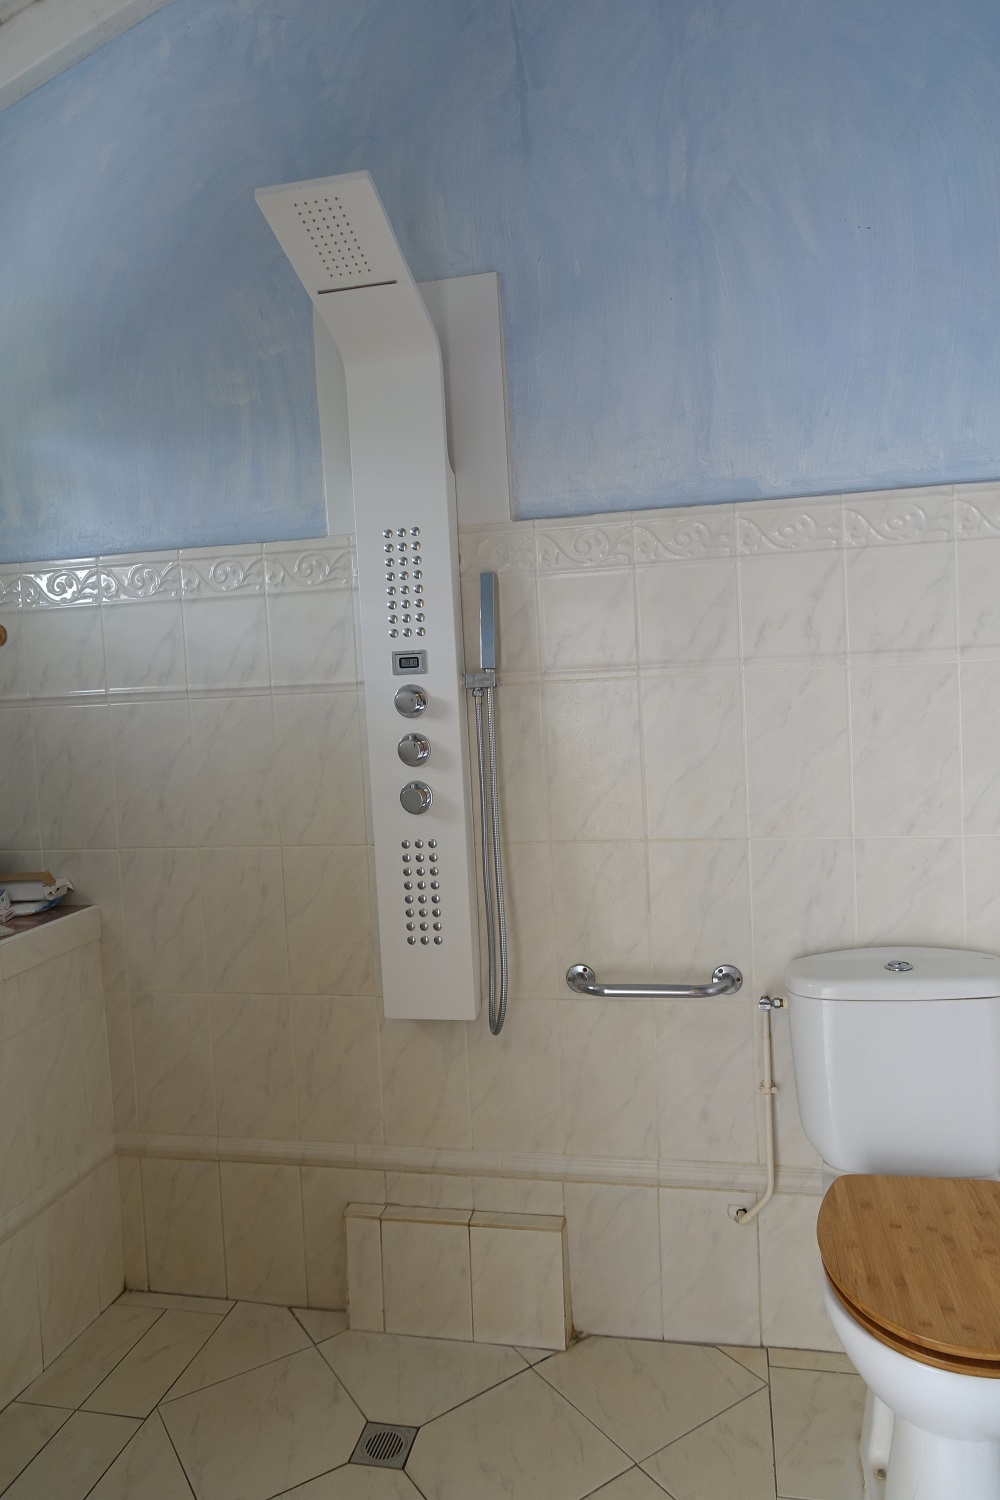 Salle de bain/WC - RDC -